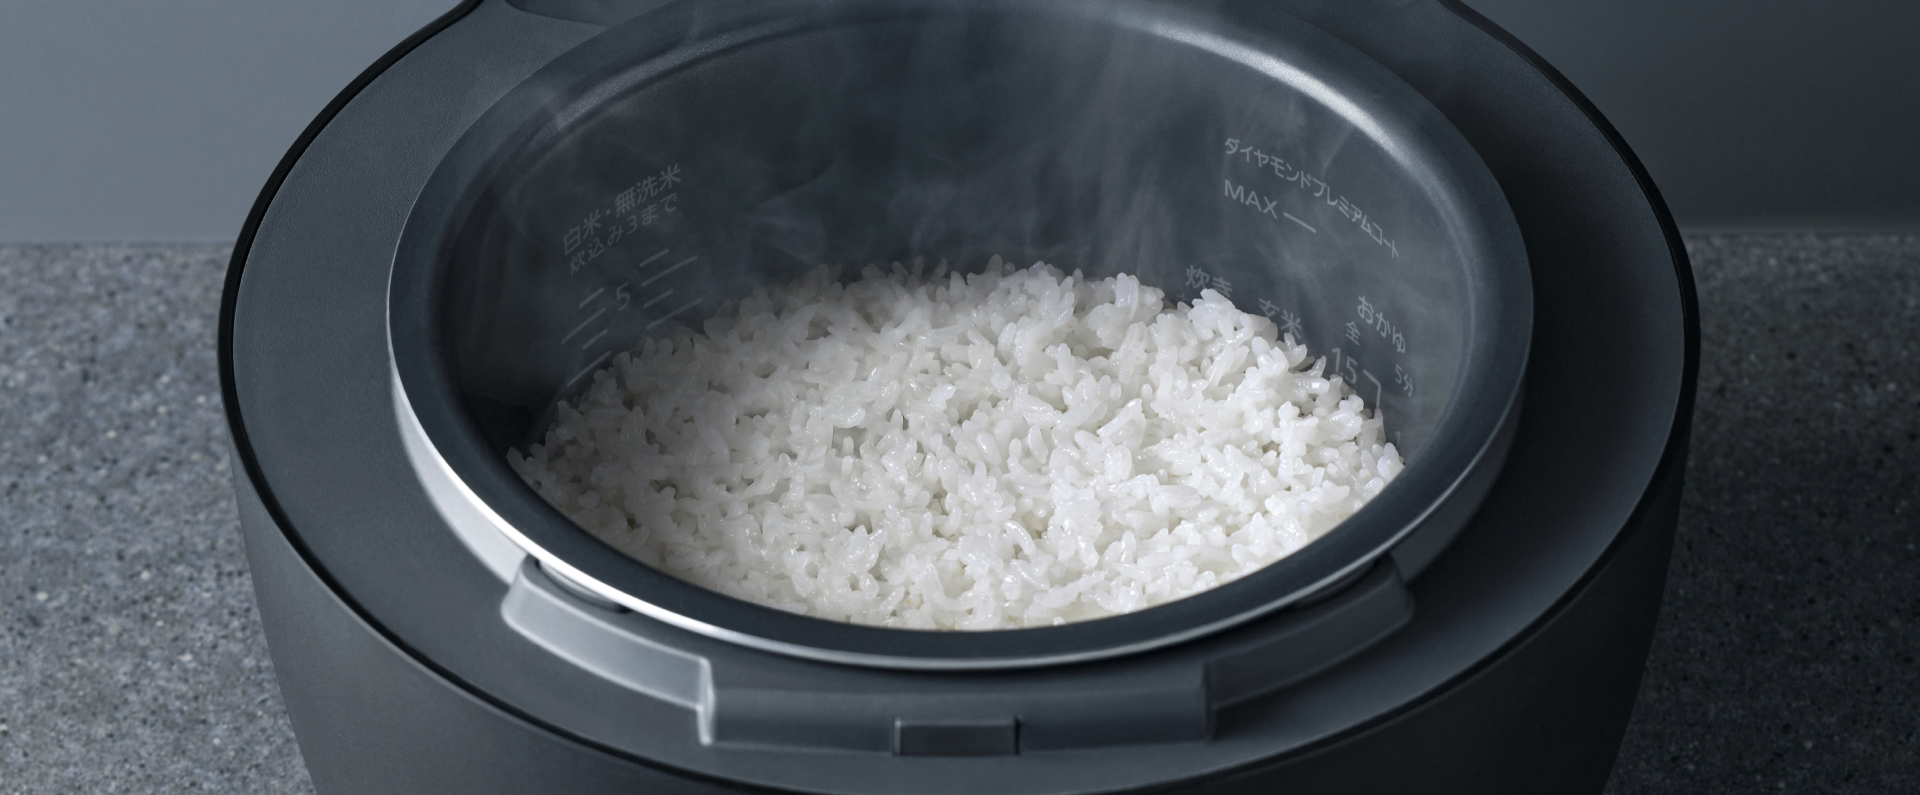 お米が炊きあがり、炊飯器の蓋を開けている画像です。